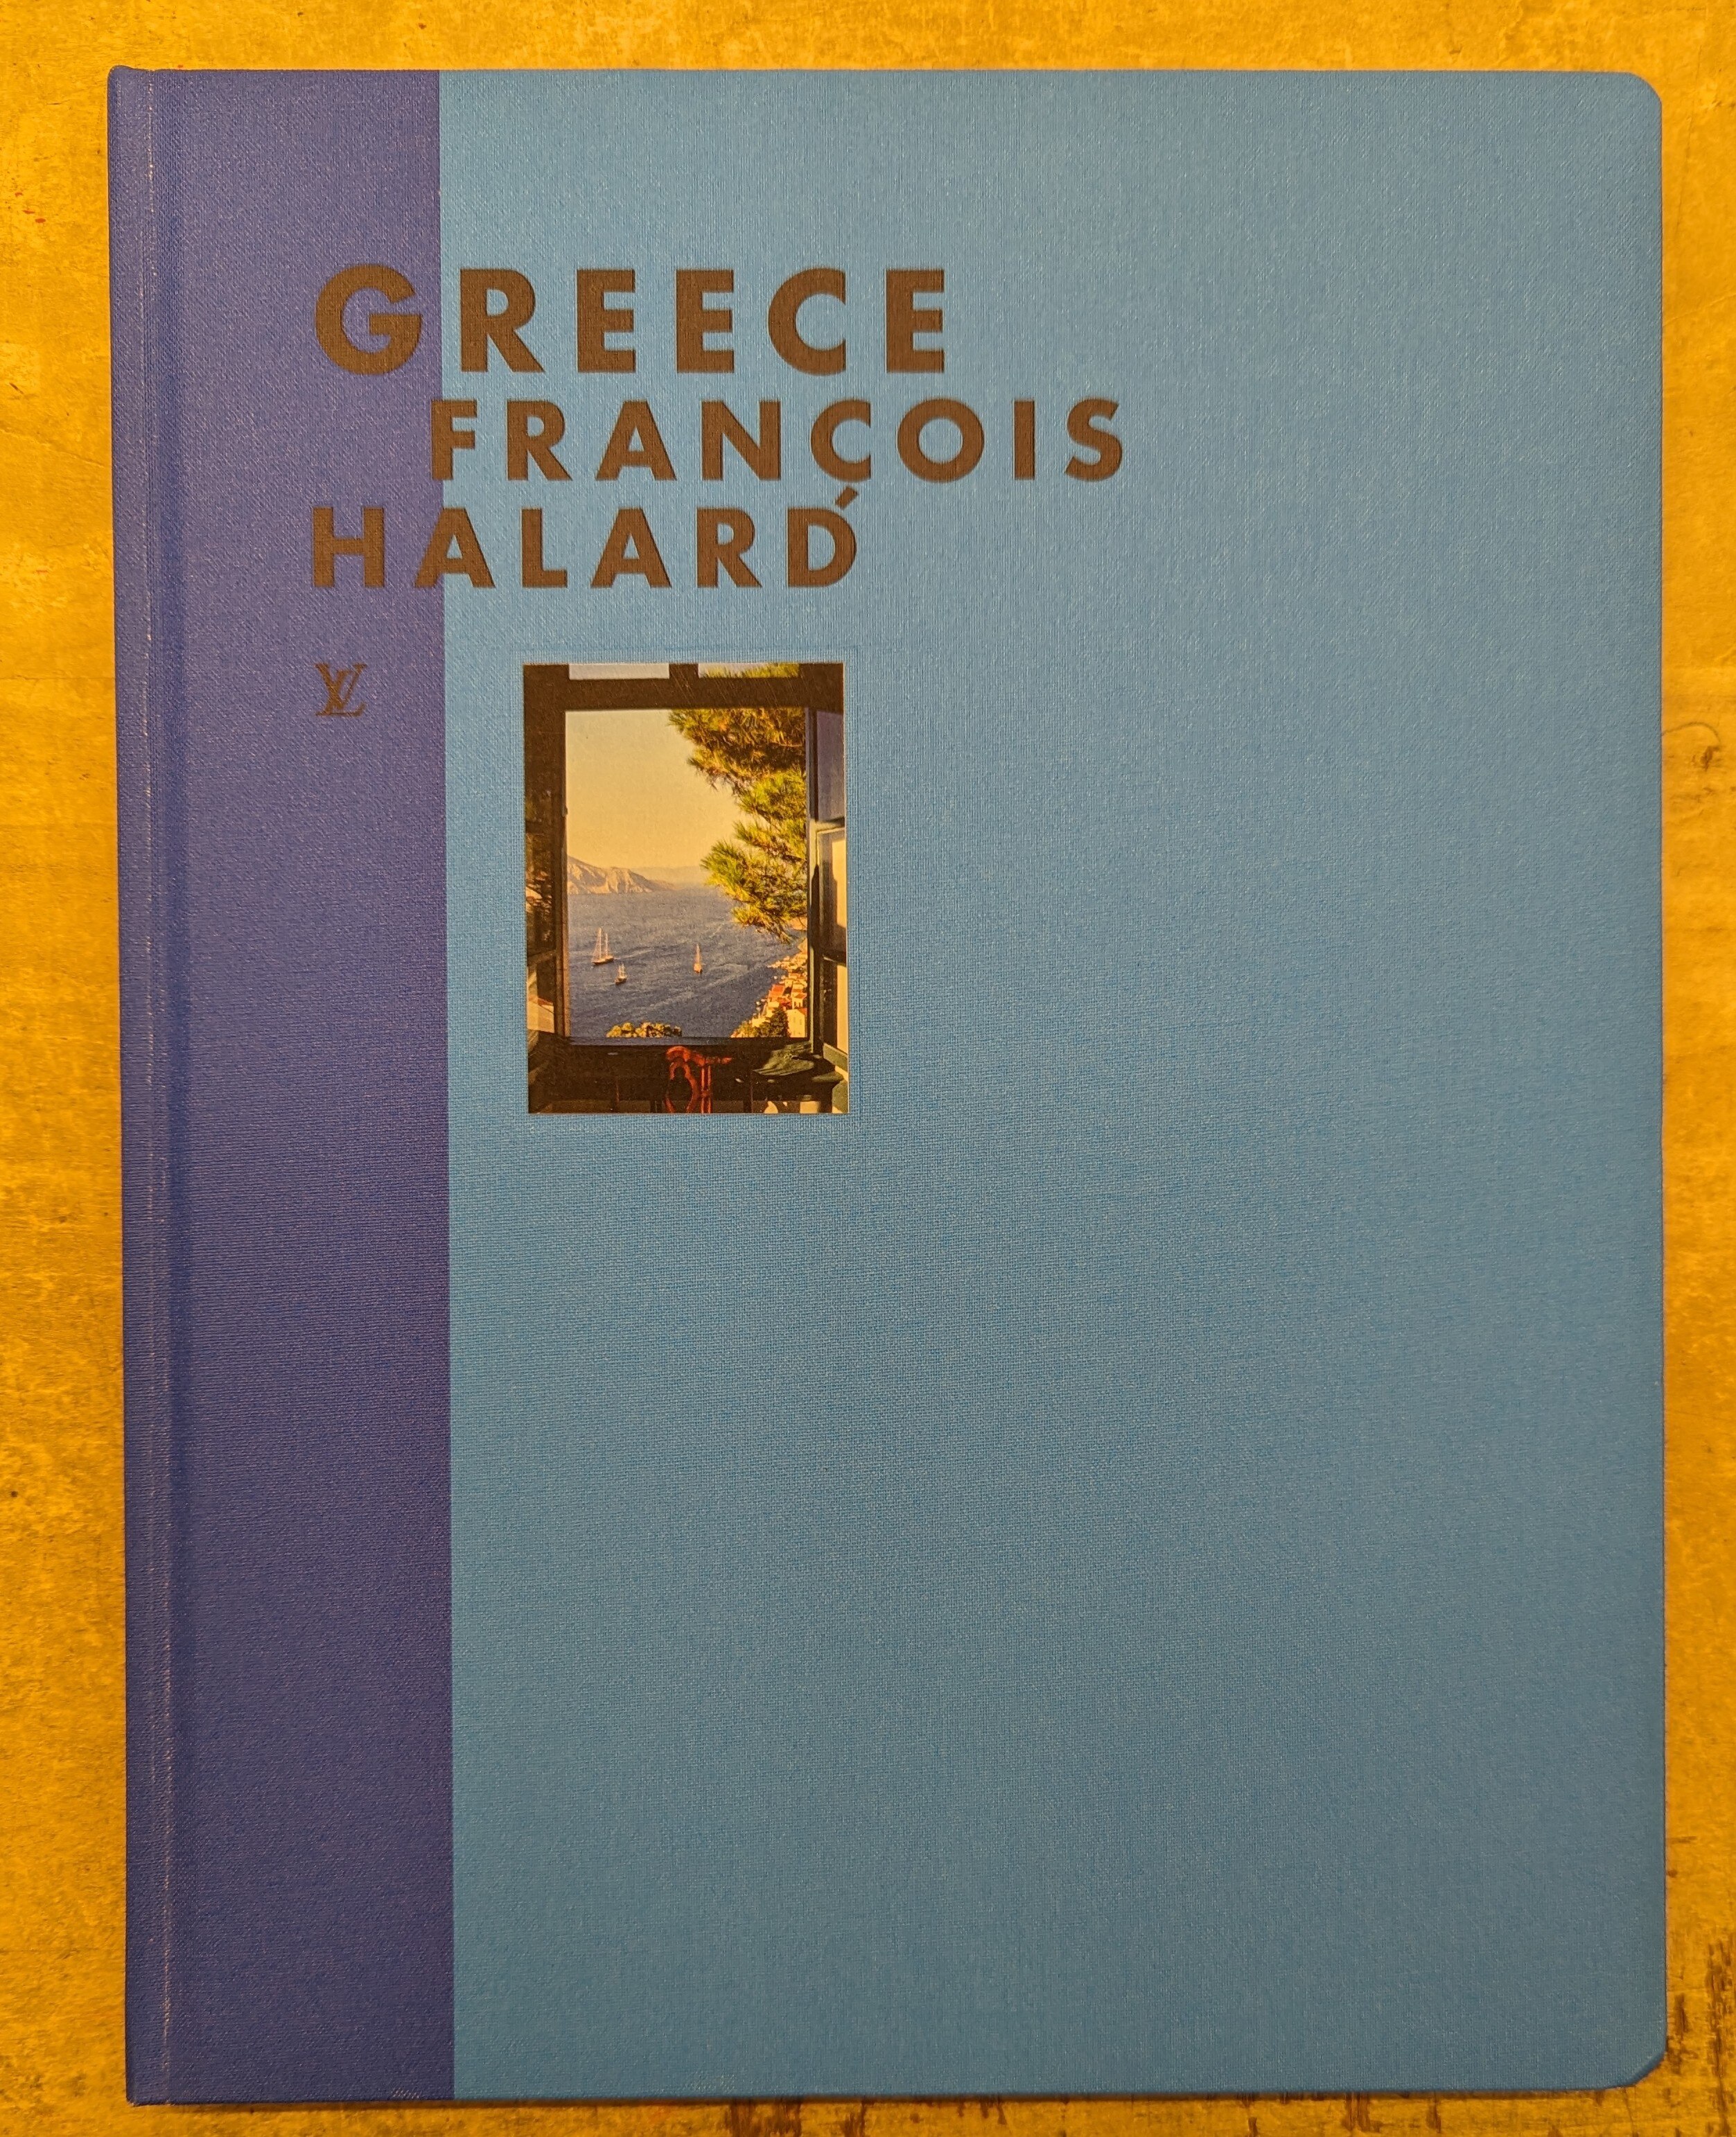 Fashion Eye Greece by François Halard